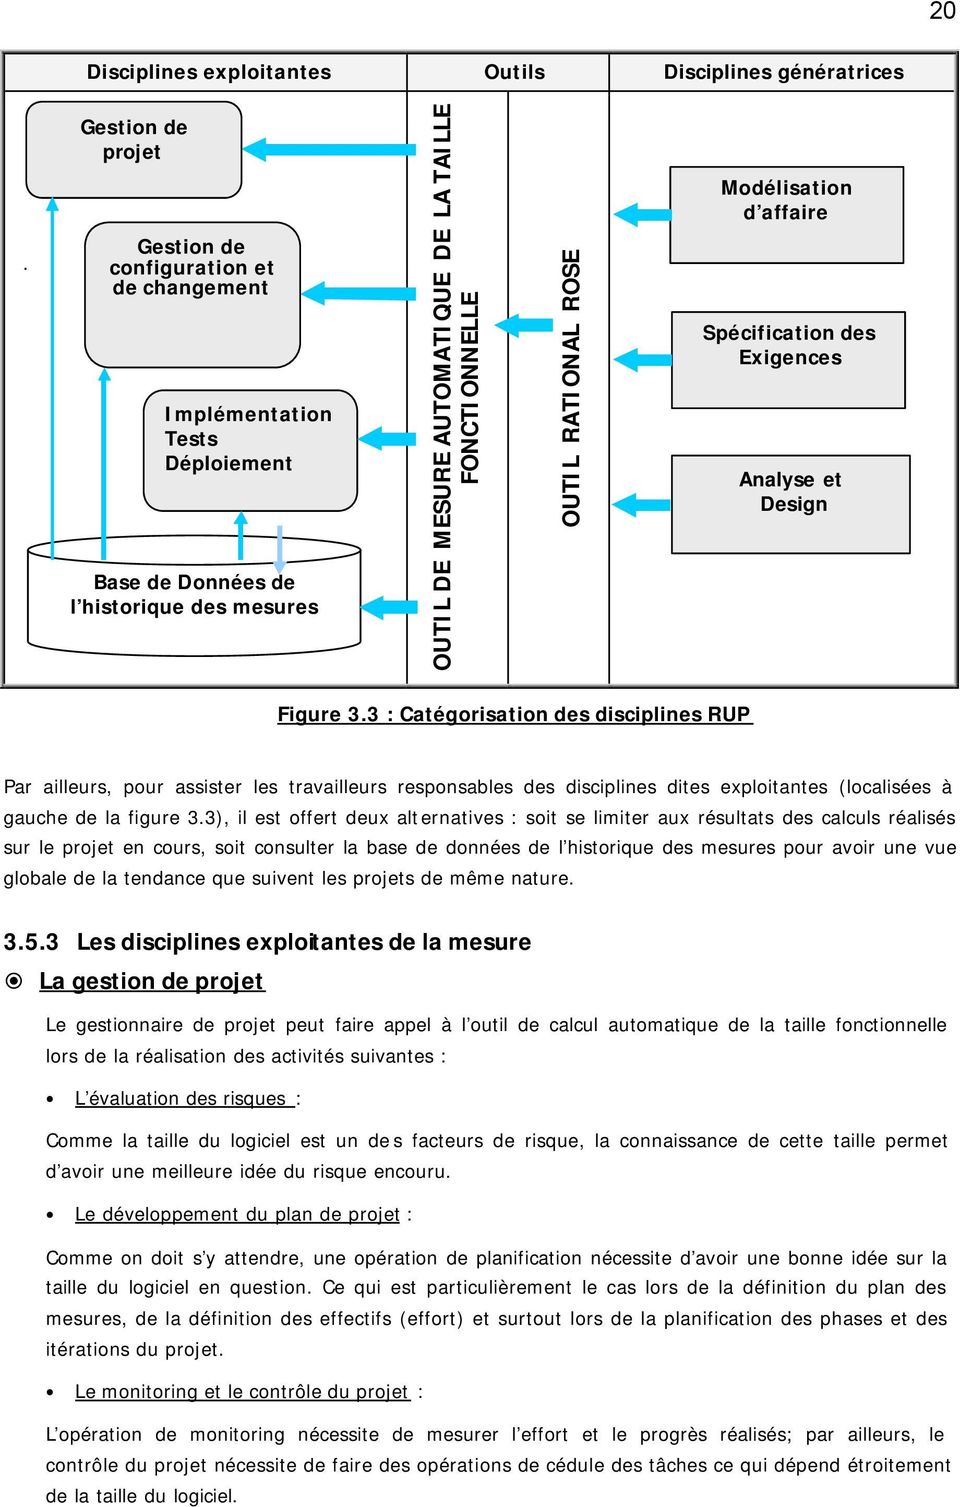 RATIONAL ROSE Modélisation d affaire Spécification des Exigences Analyse et Design Figure 3.